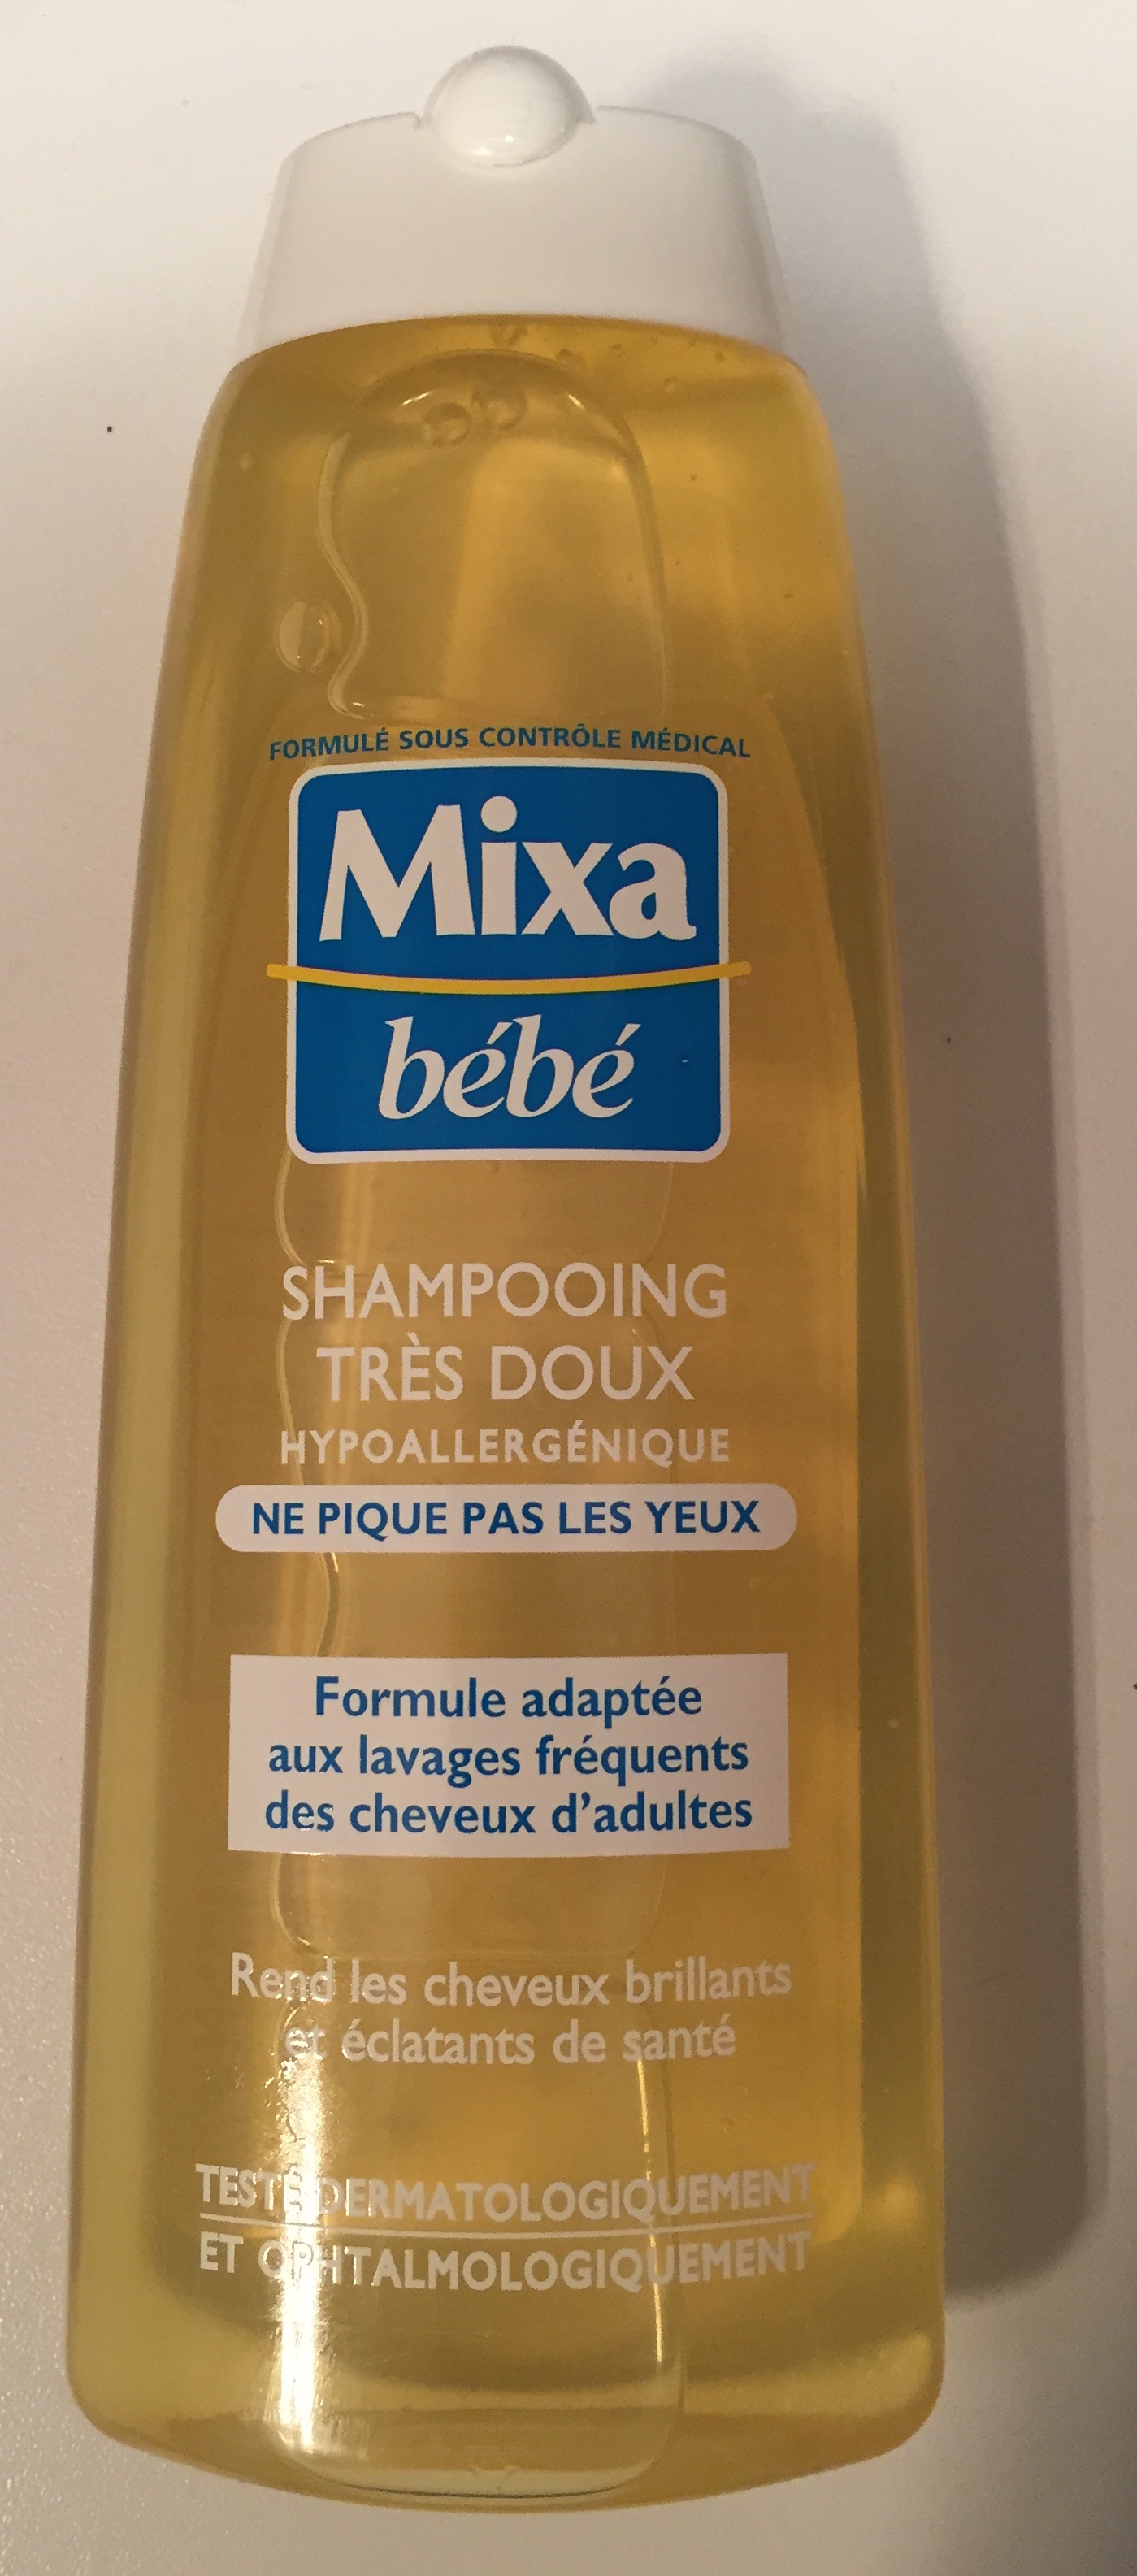 Mixa Bébé Shampooing très doux hypoallergénique - Product - fr